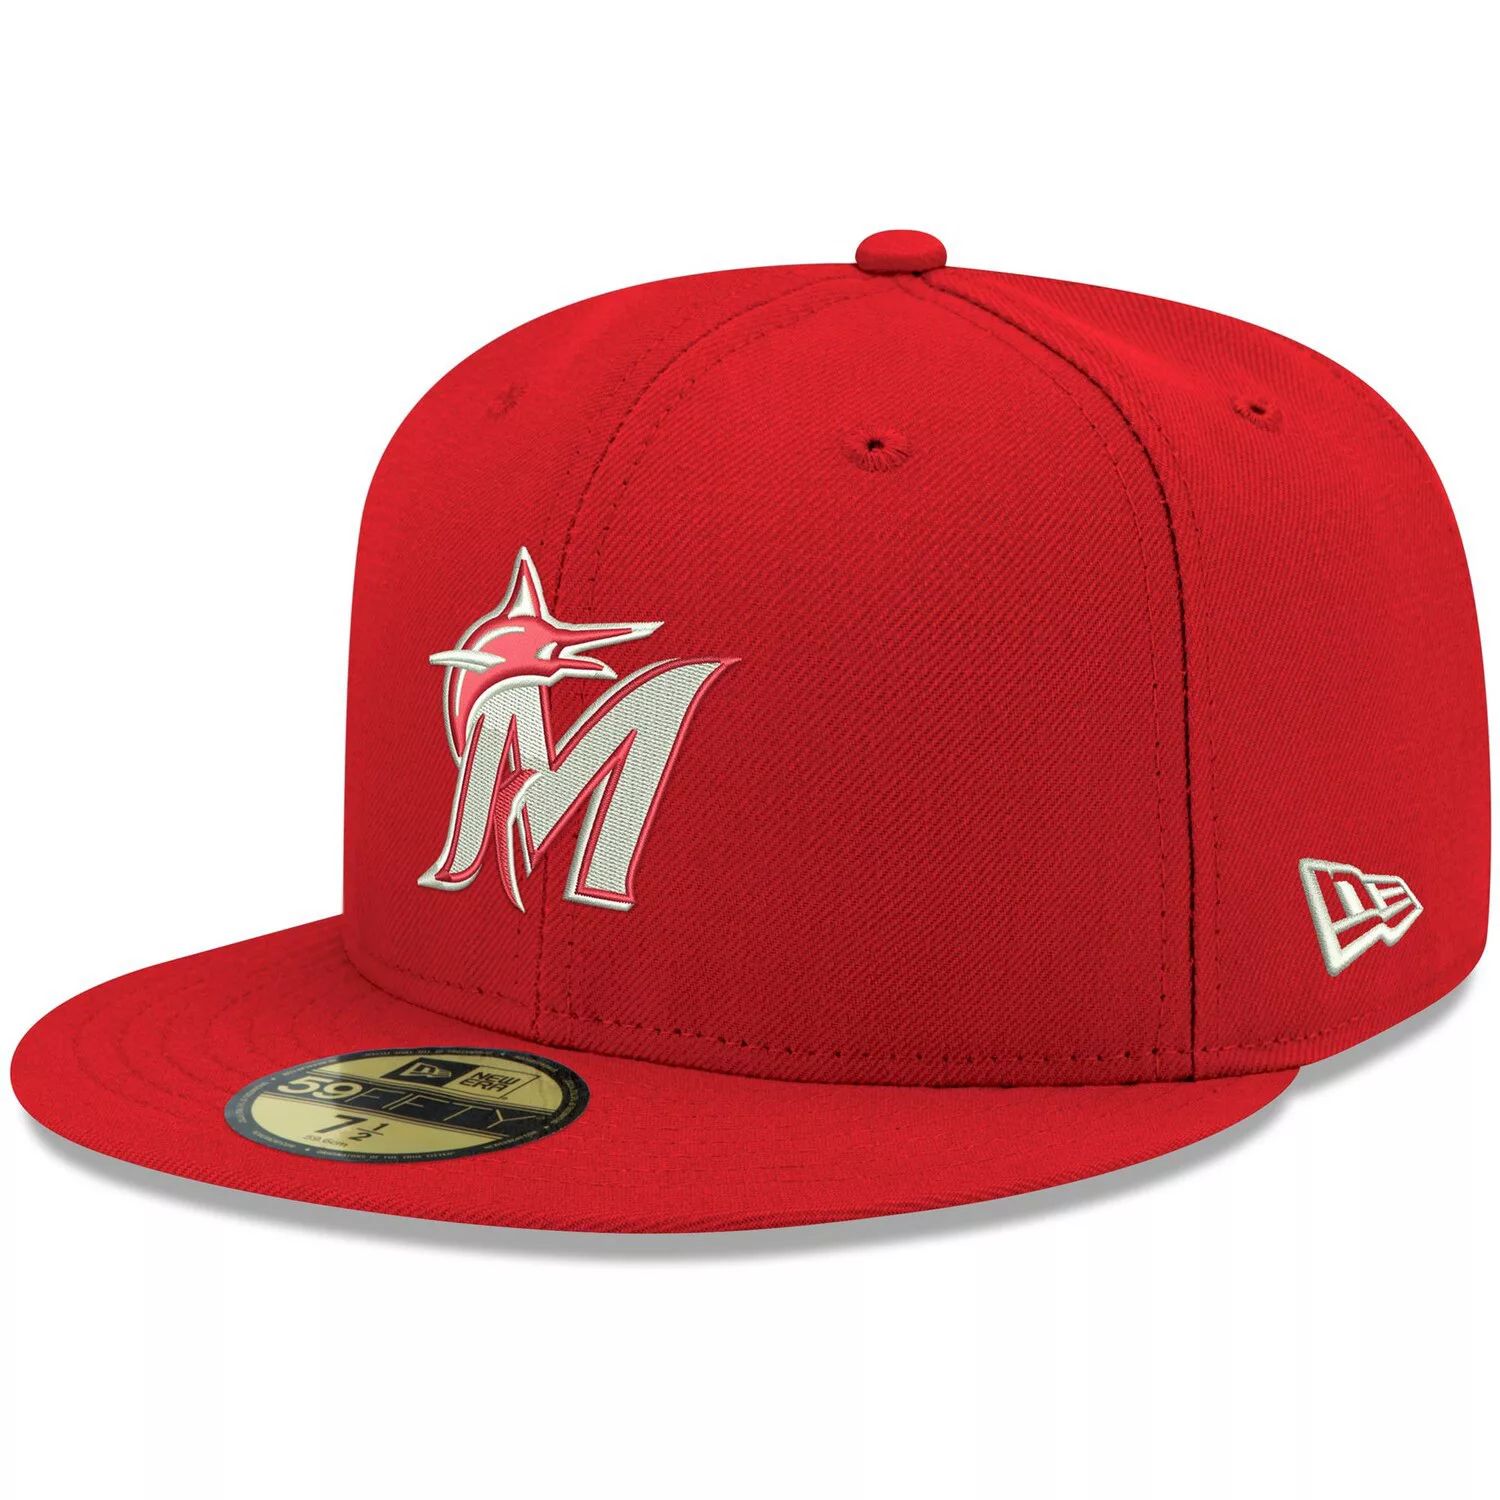 Мужская приталенная шляпа New Era Red Miami Marlins с белым логотипом 59FIFTY